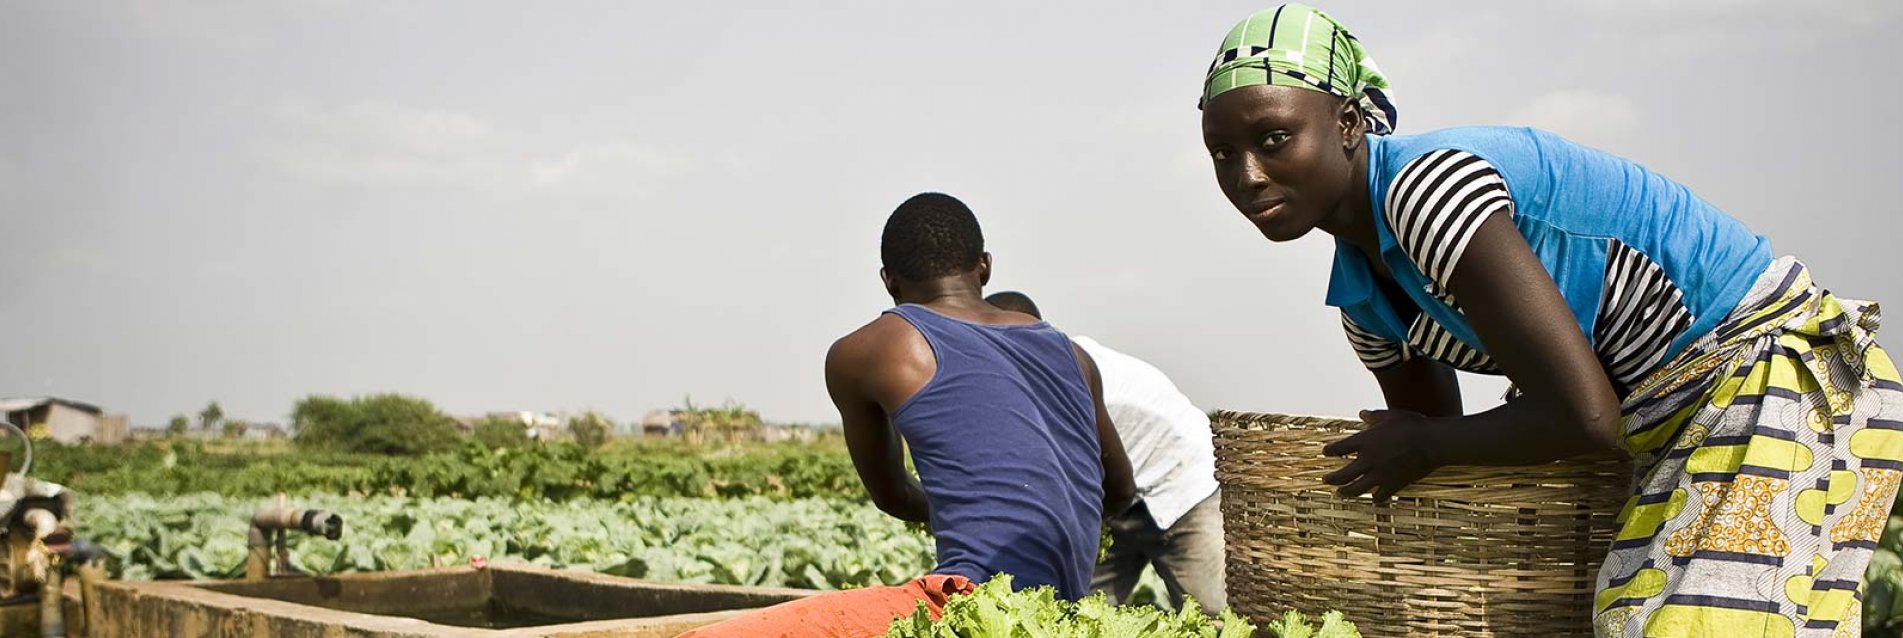 10 ans d’actions au service de l’agriculture familiale en Afrique de l’ouest